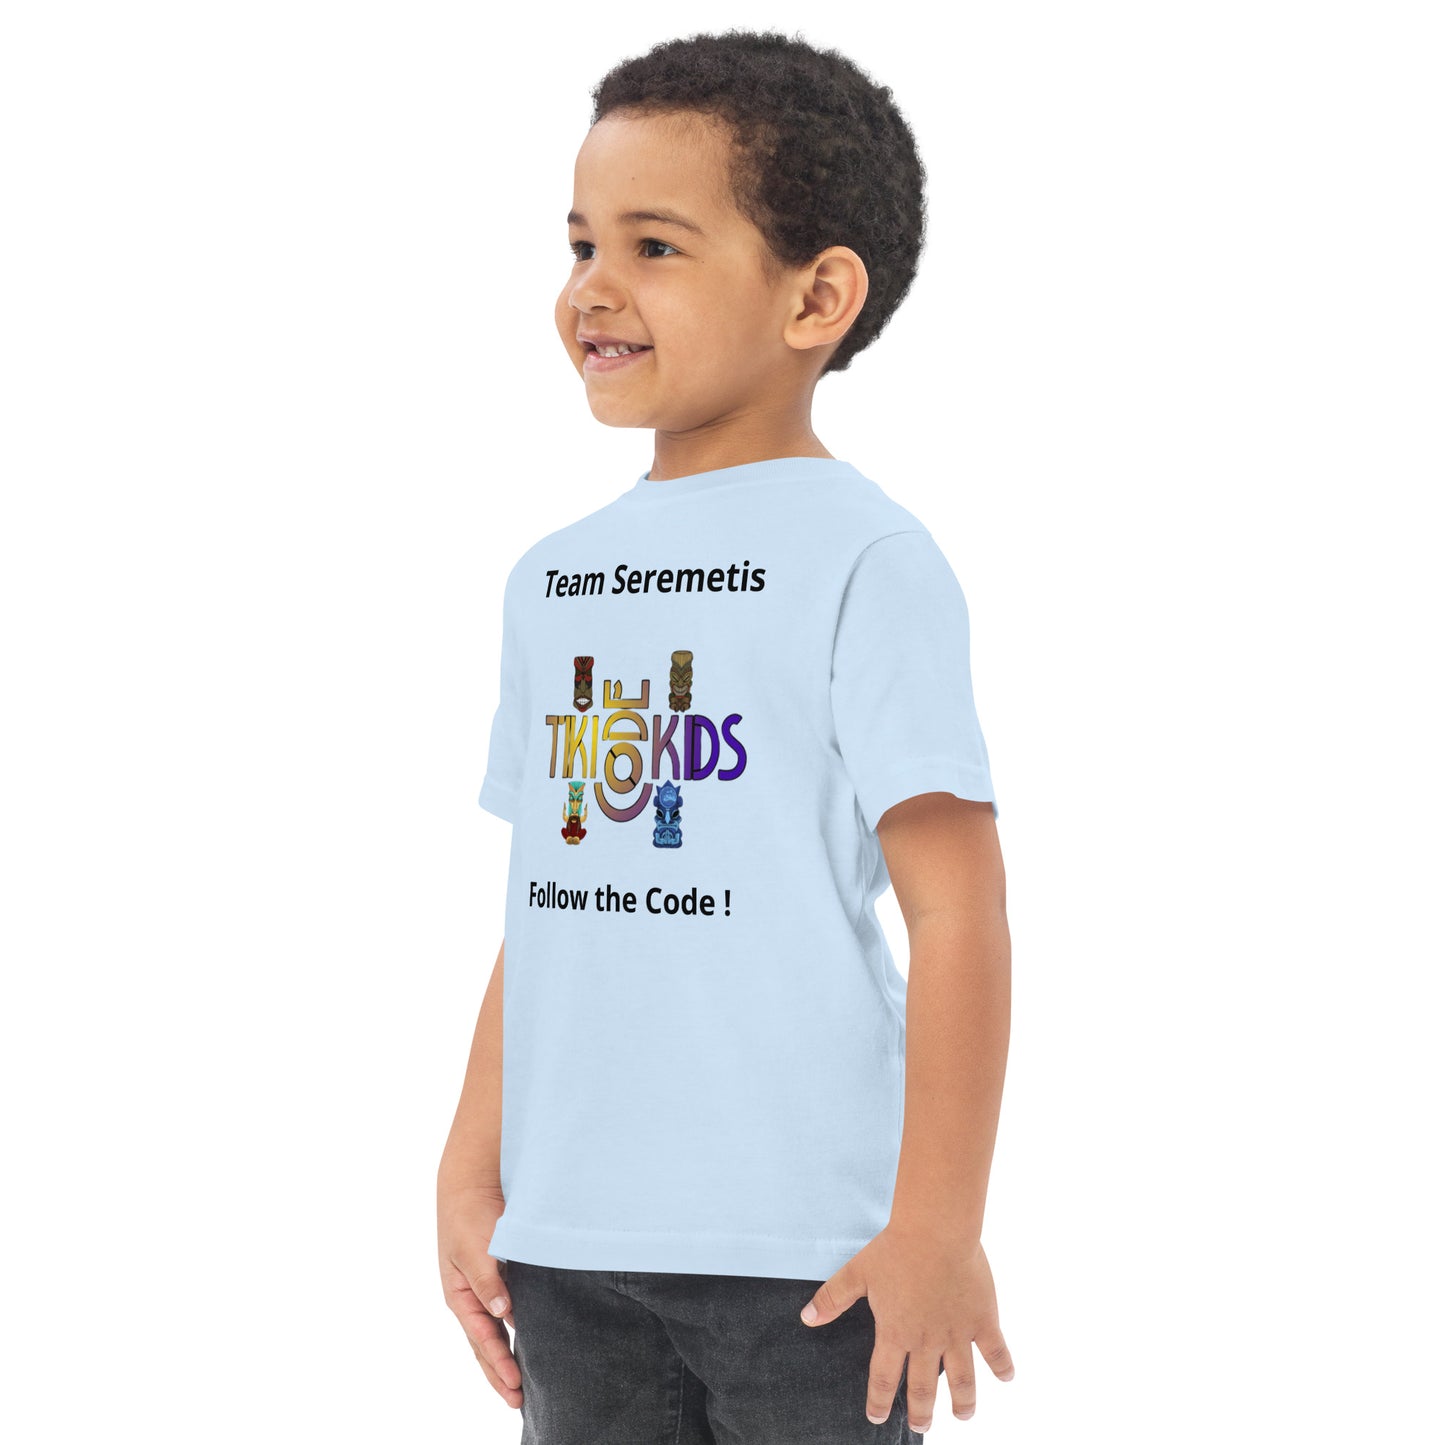 Team Seremetis Tiki Code Kids Toddler jersey t-shirt